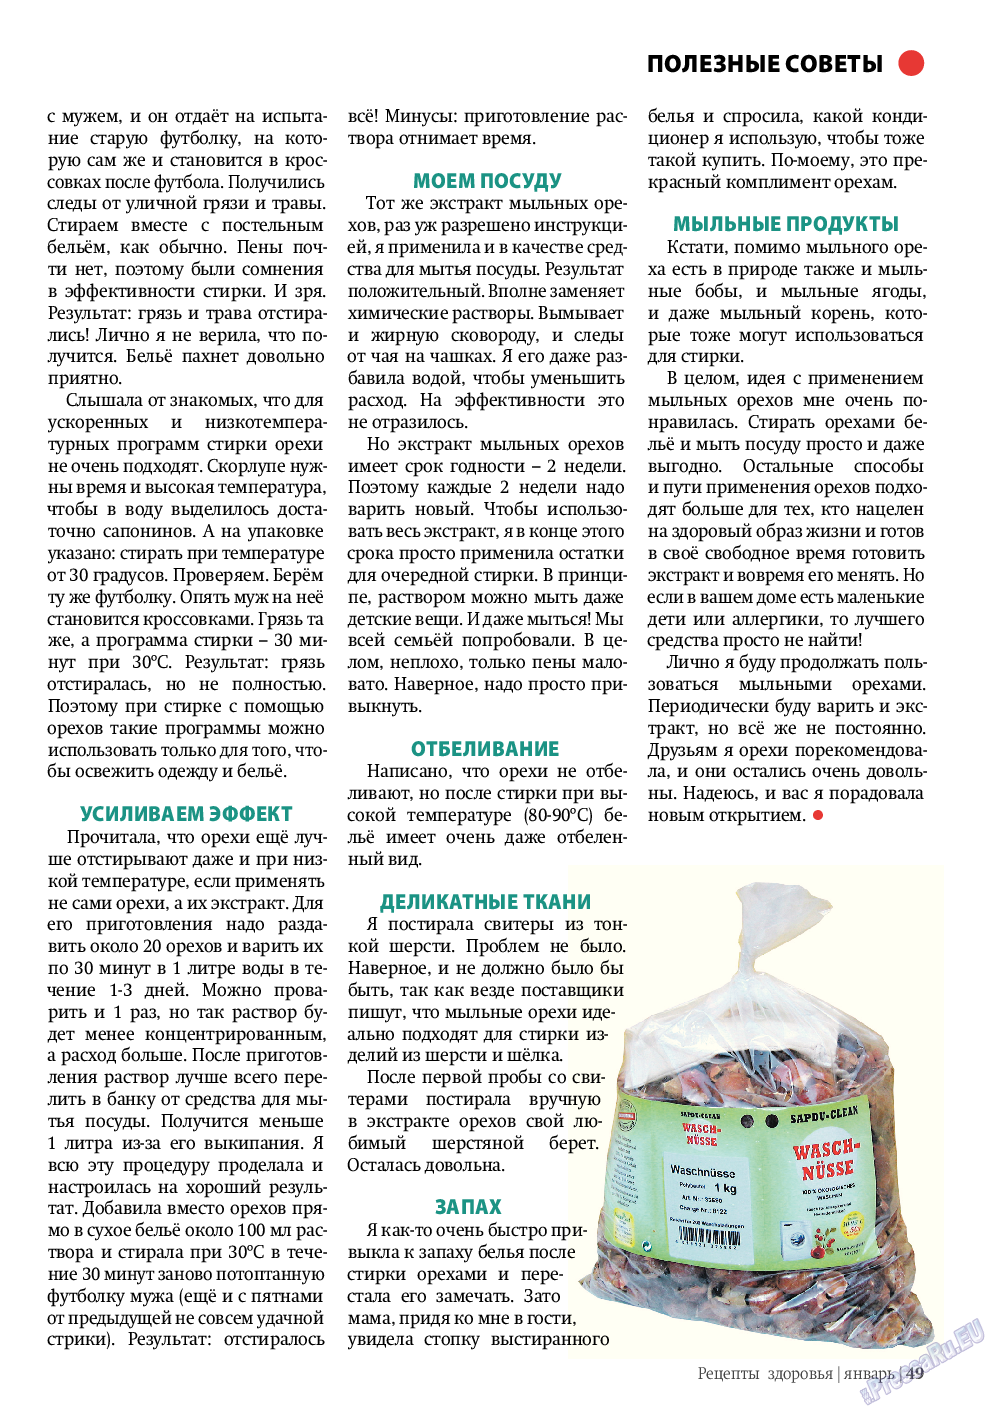 Рецепты здоровья (журнал). 2012 год, номер 1, стр. 49